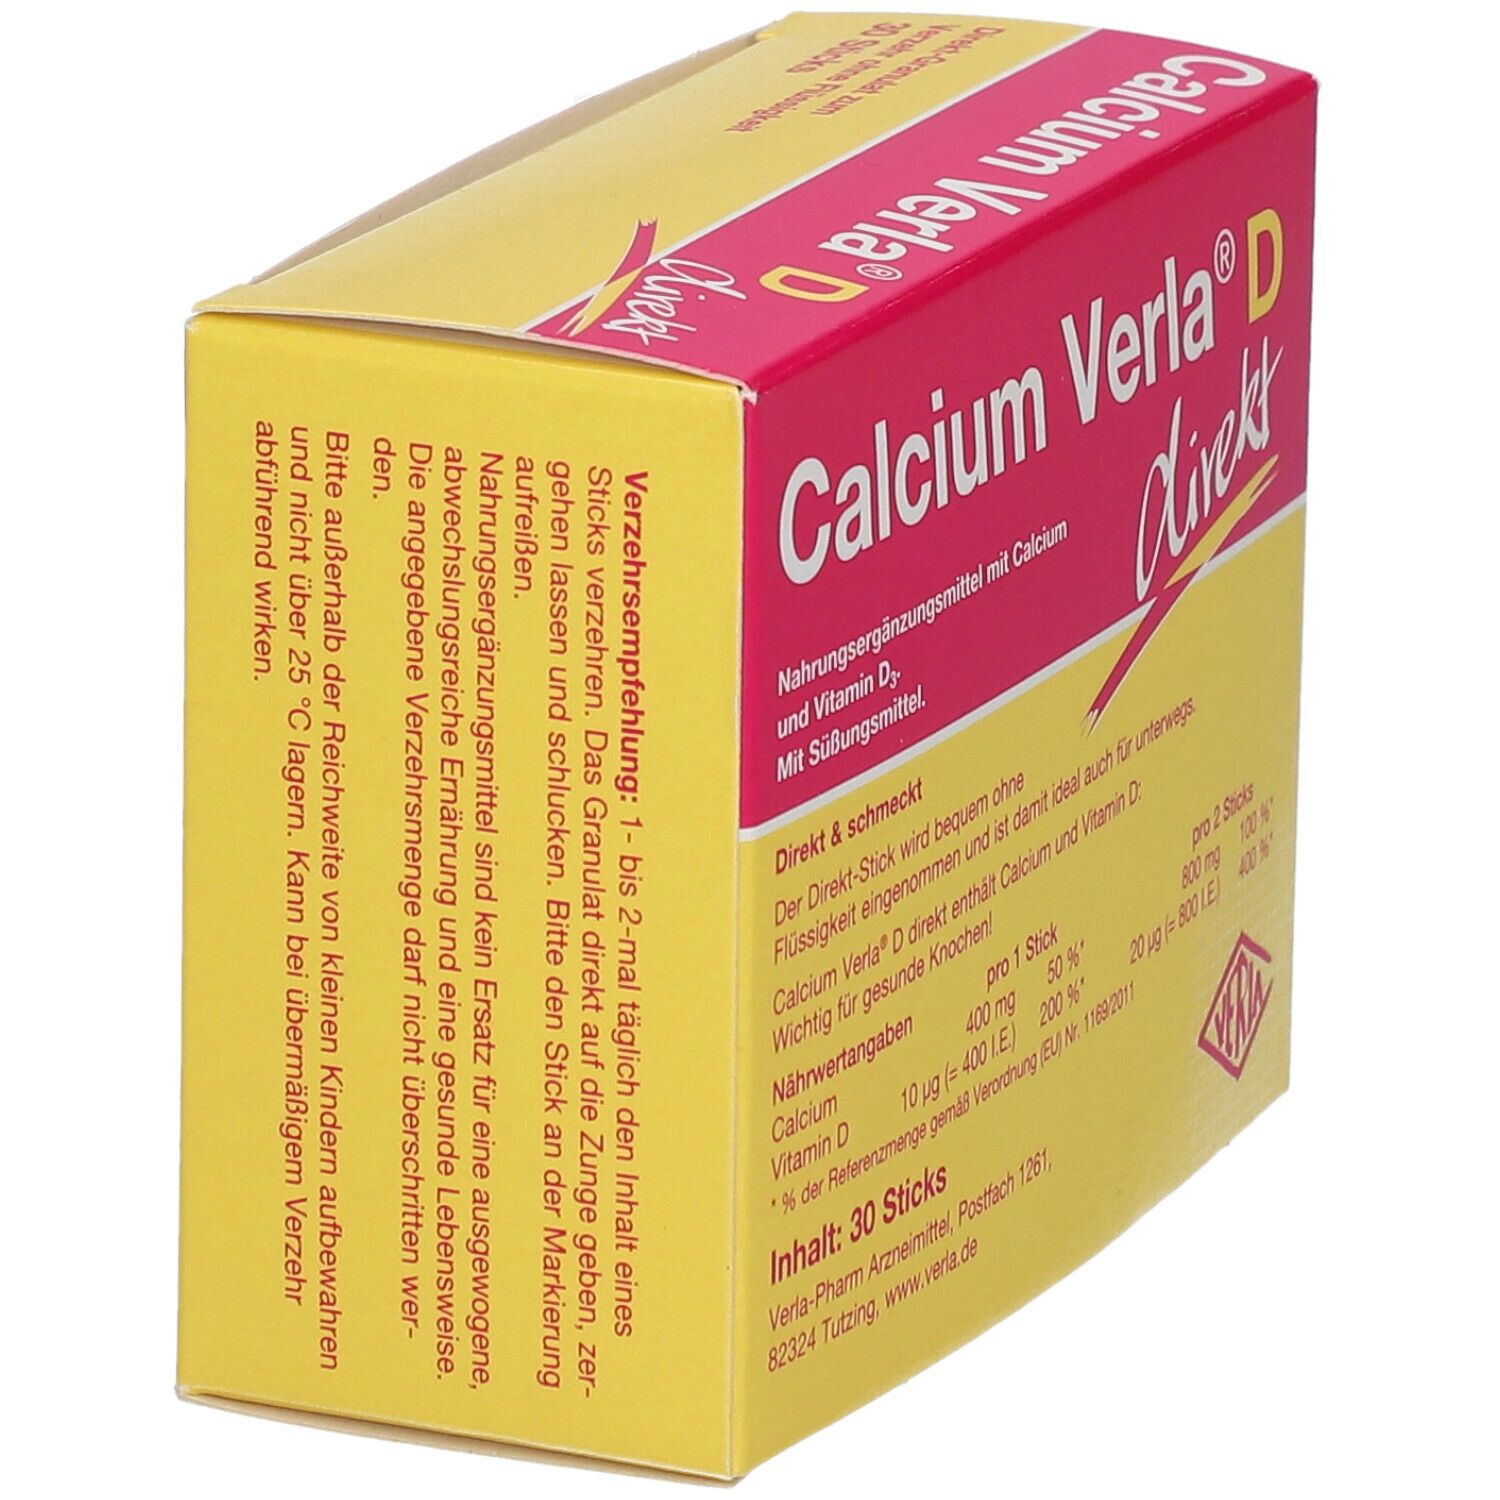 Calcium Verla® D direkt Granulat